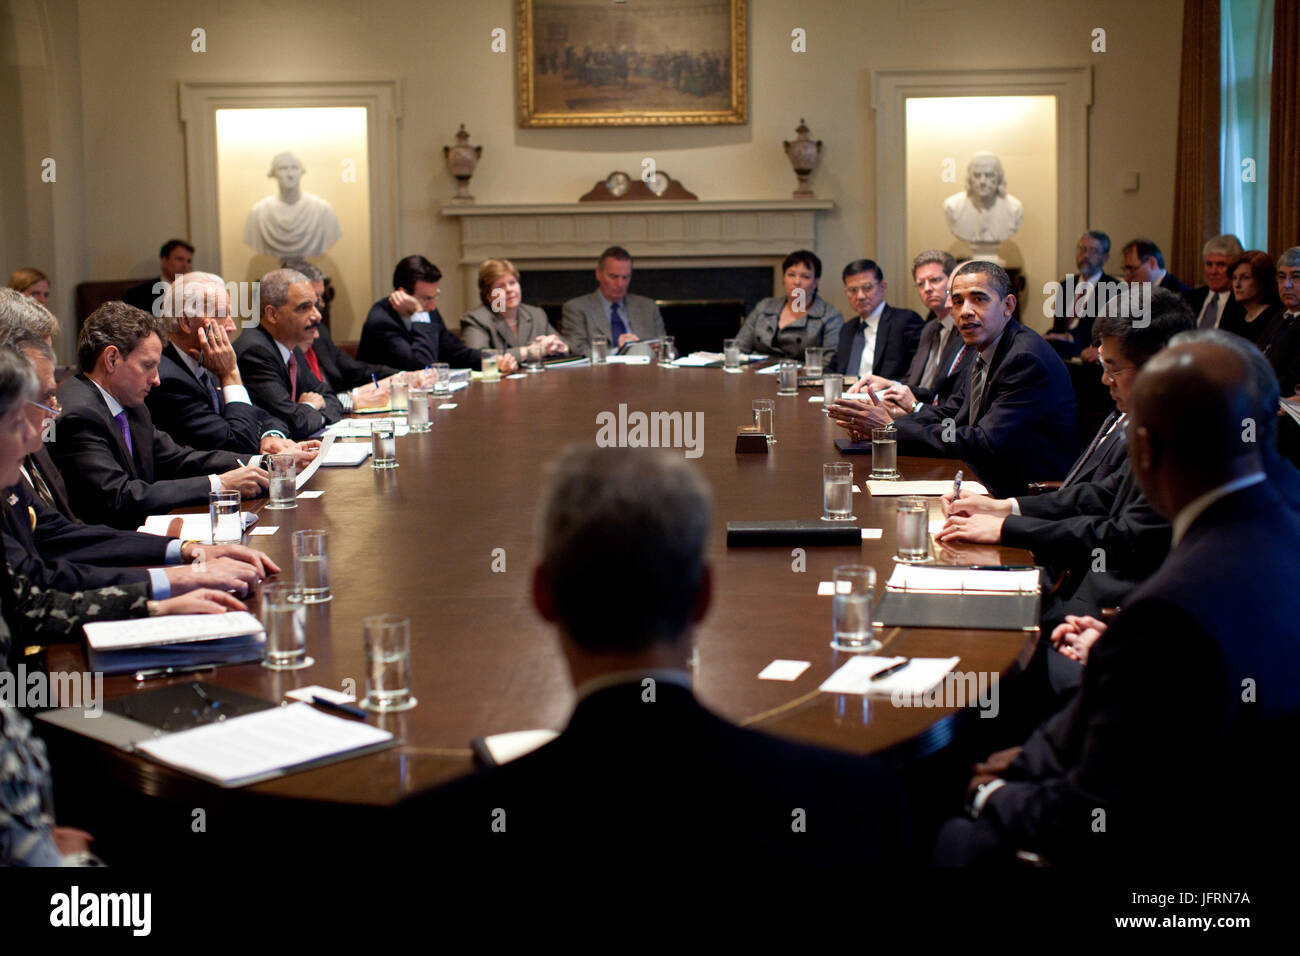 Le président Barack Obama rencontre les membres de son cabinet dans la salle du Cabinet à la Maison Blanche le 20 avril 2009. Photo Officiel de la Maison Blanche par Pete Souza Banque D'Images